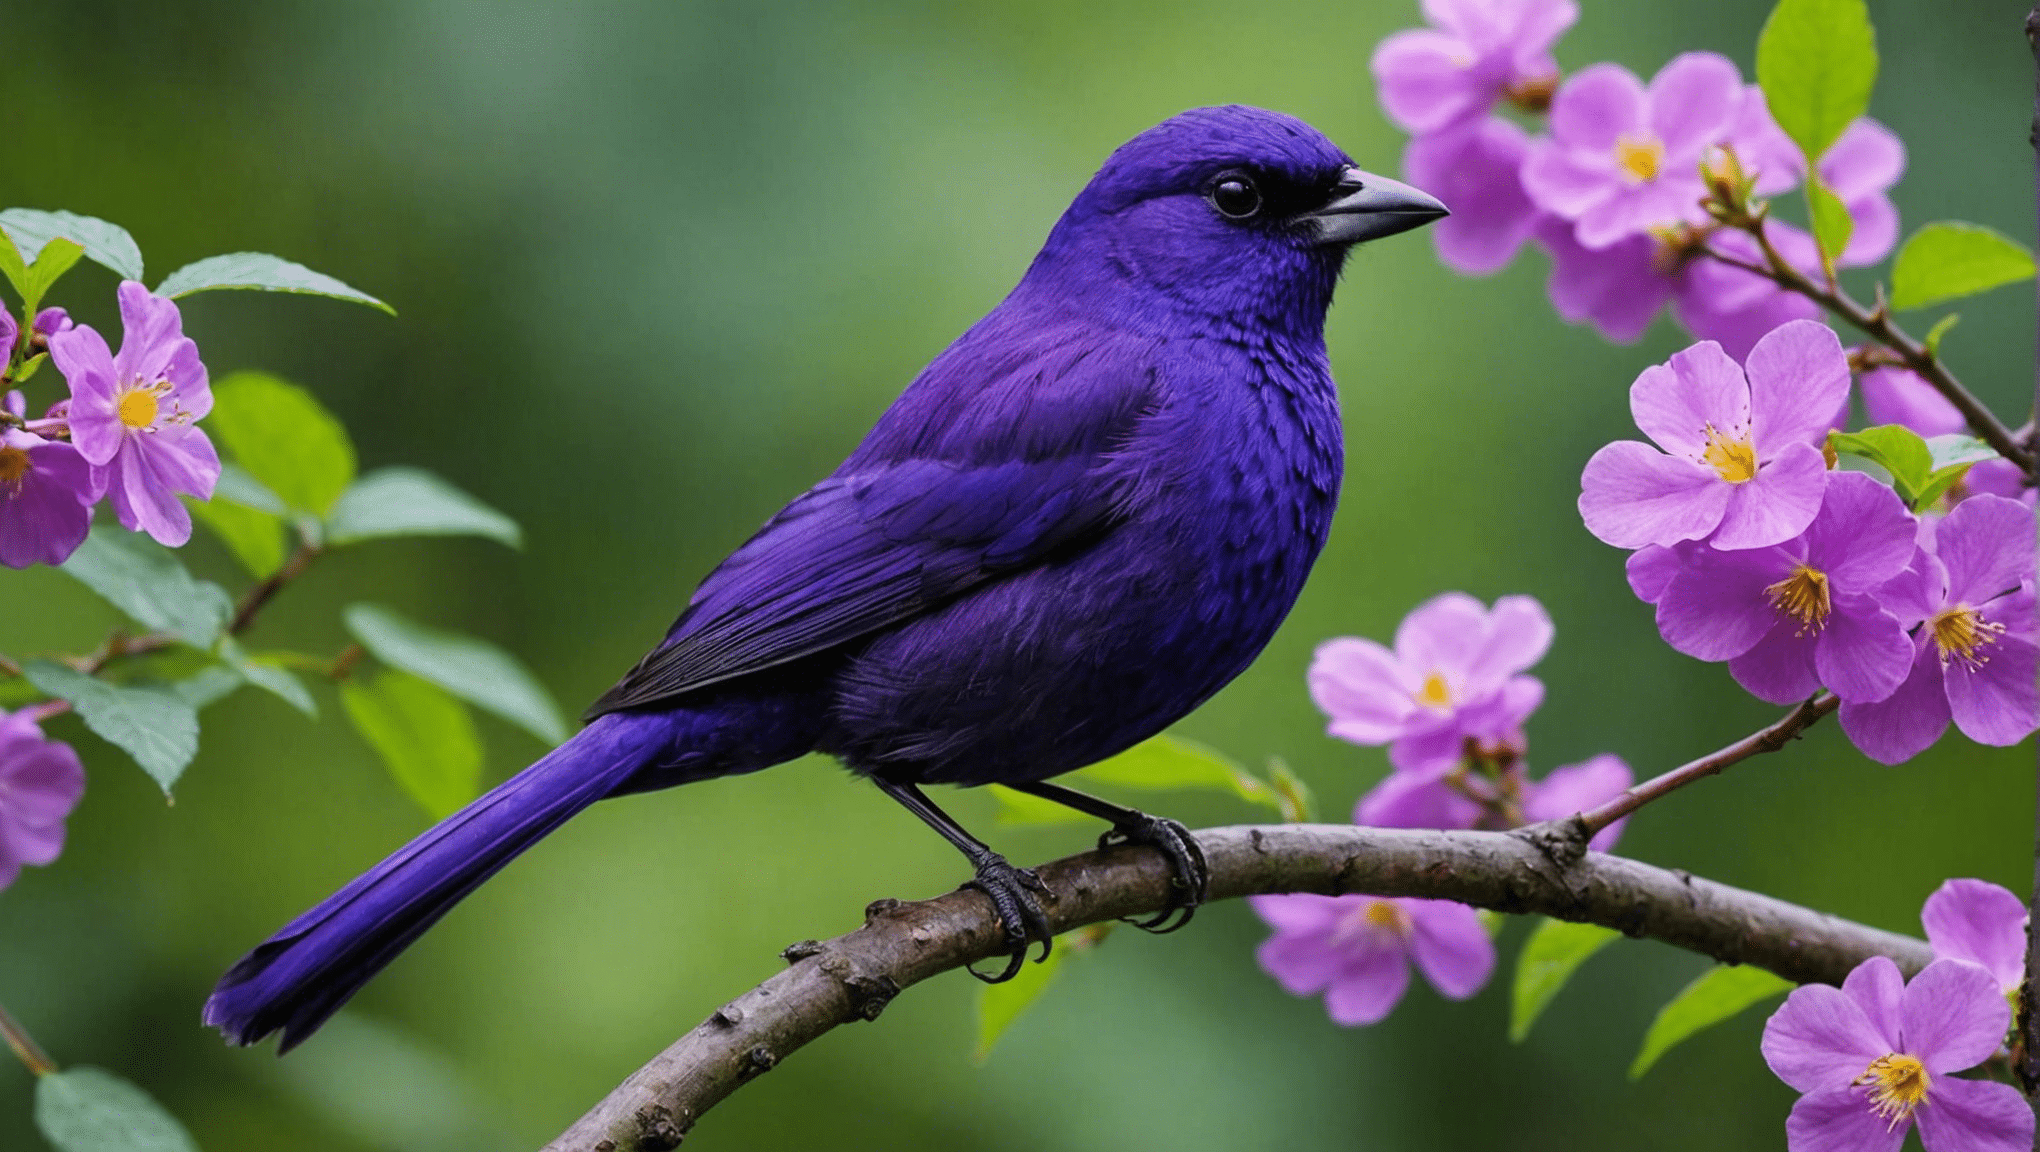 descubra se os pássaros roxos são raros neste artigo informativo sobre espécies de aves e suas colorações únicas.